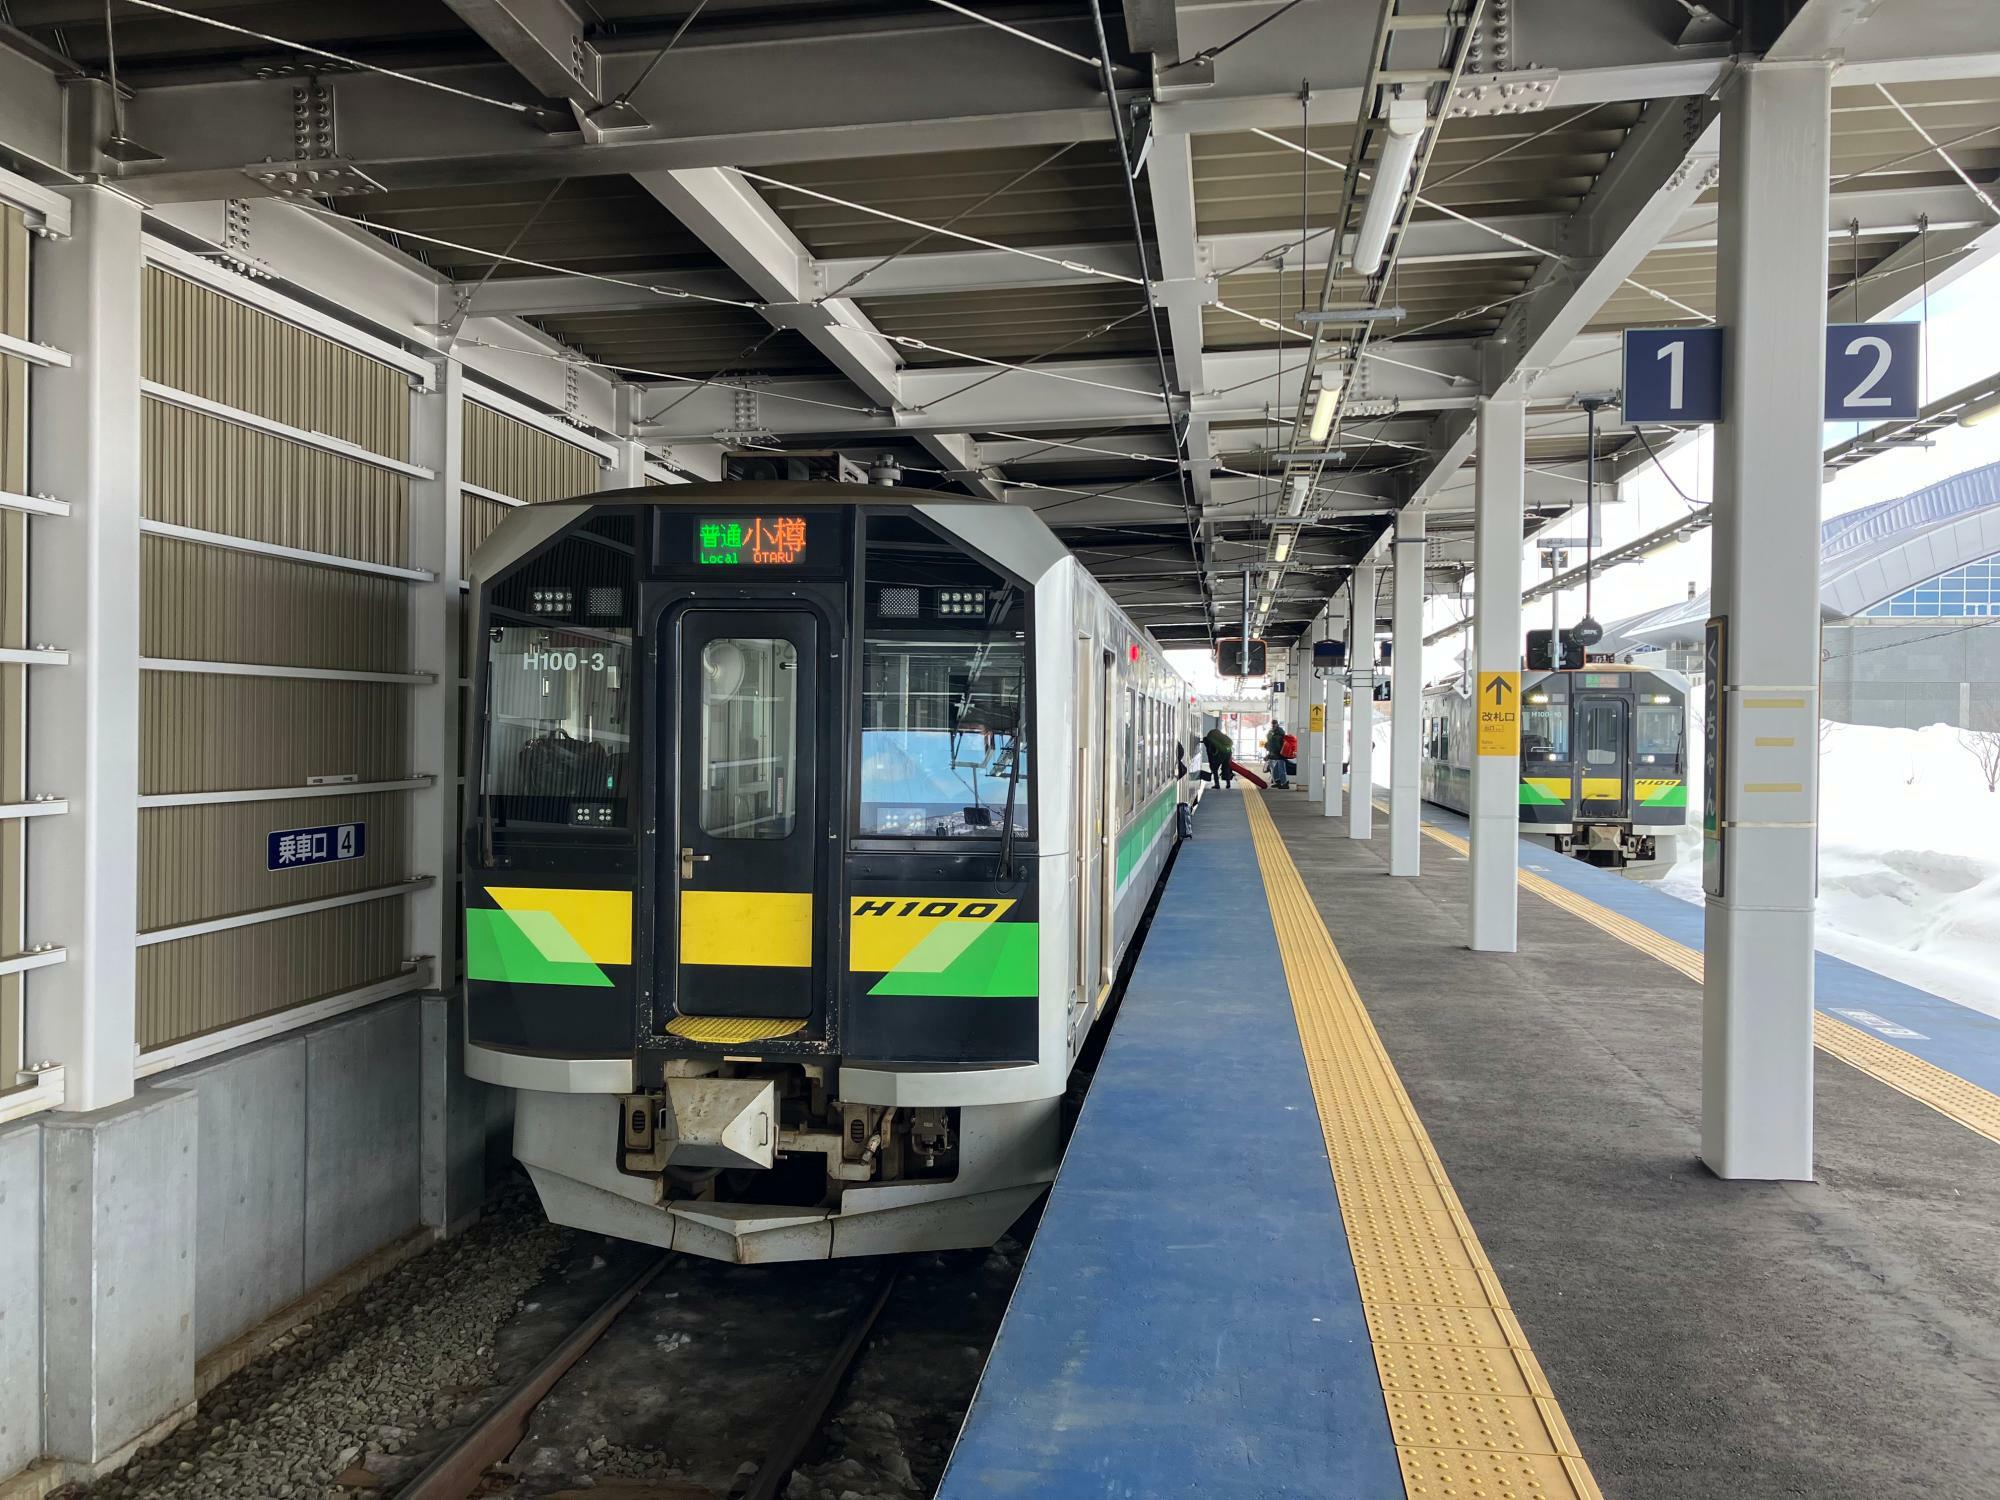 蘭越からの接続列車を受けて発車を待つ小樽行（筆者撮影）